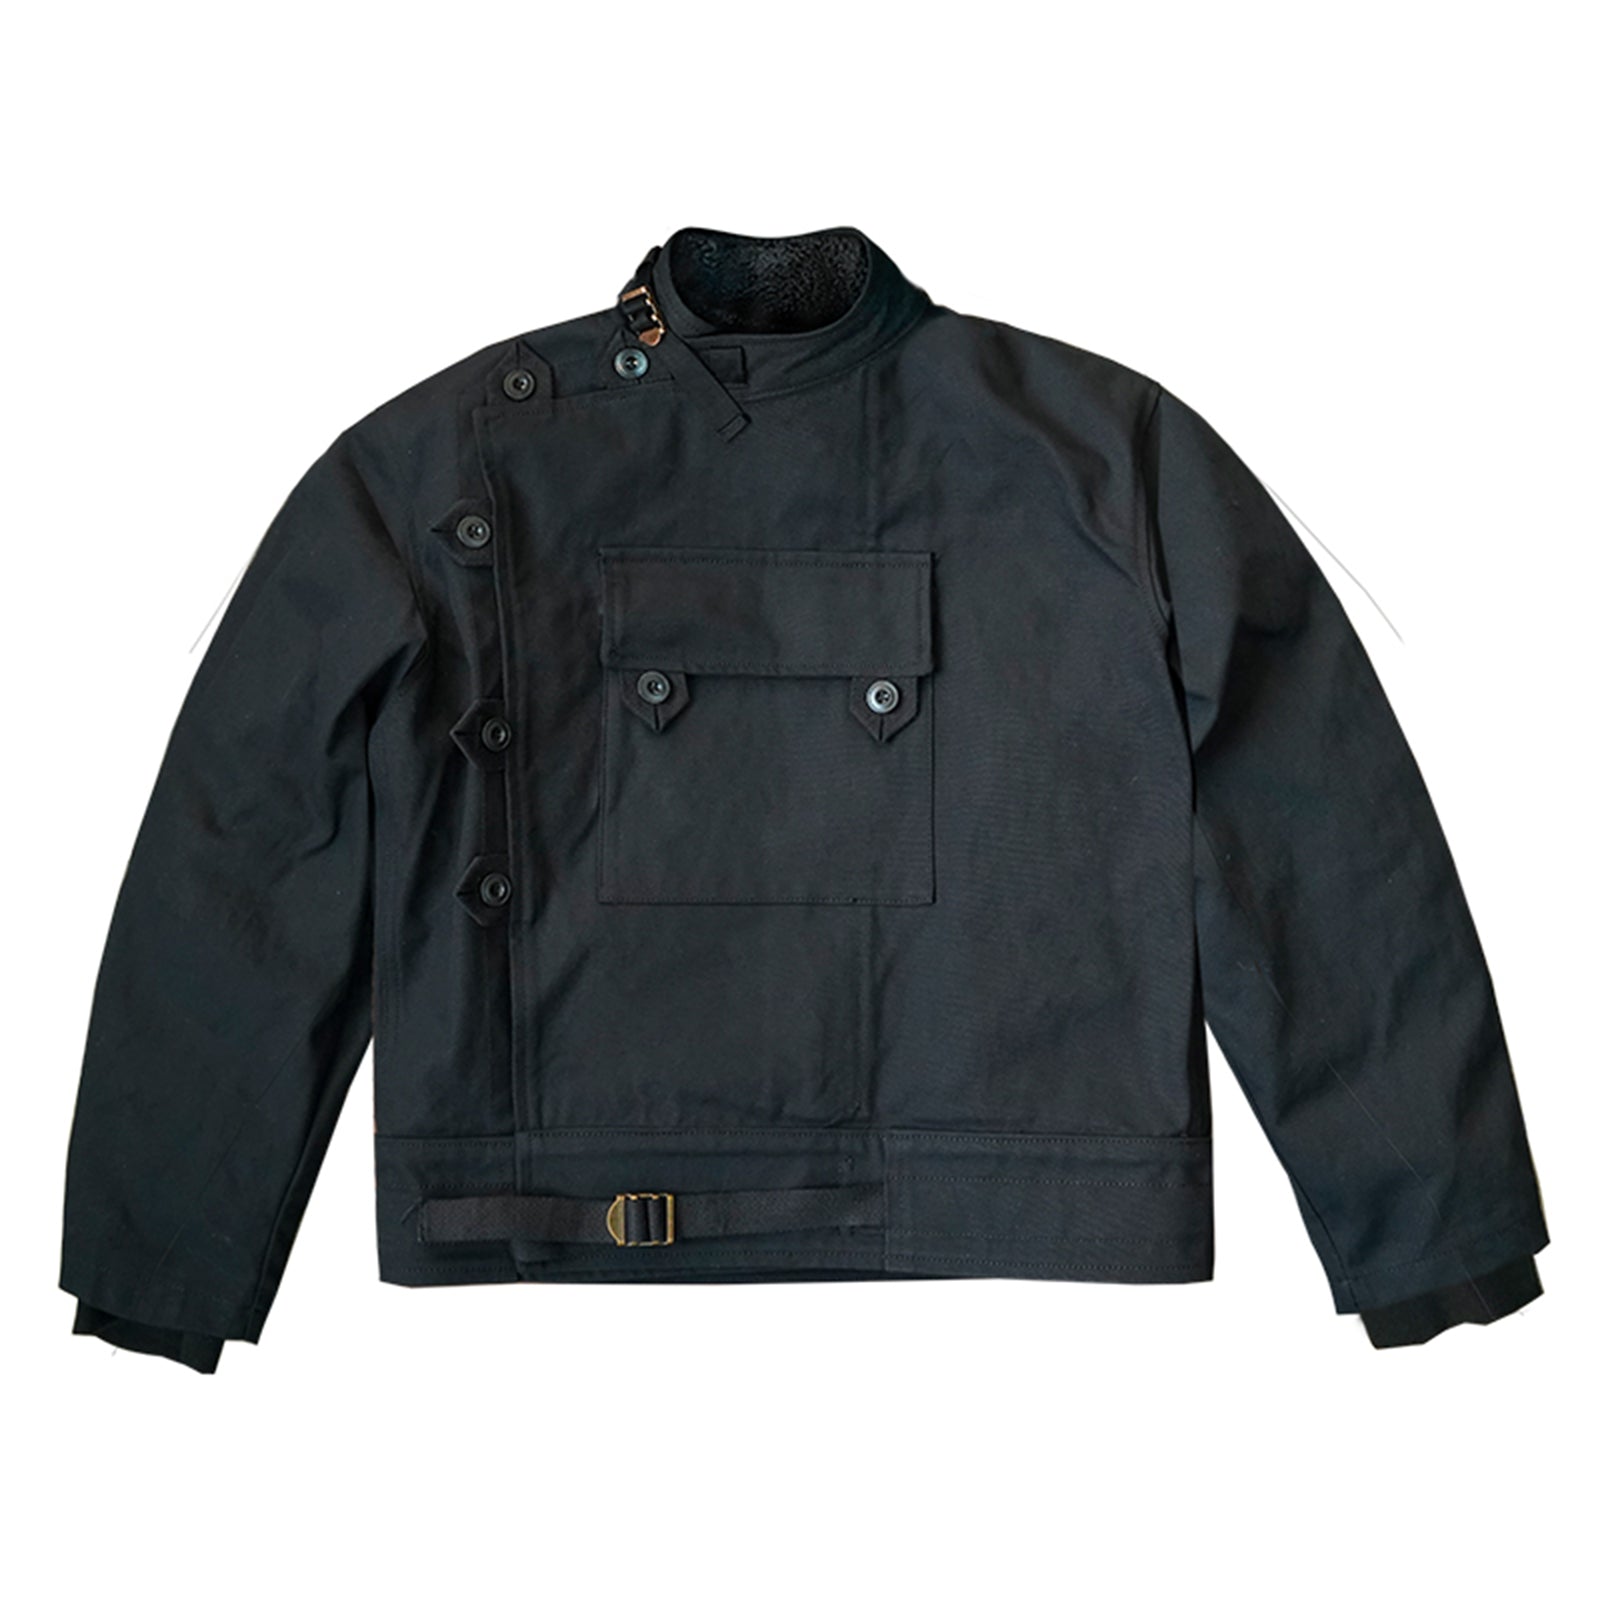 Vintage Workwear Original Swedish Motorcycle Jacket Cycling Detachable  Jacket